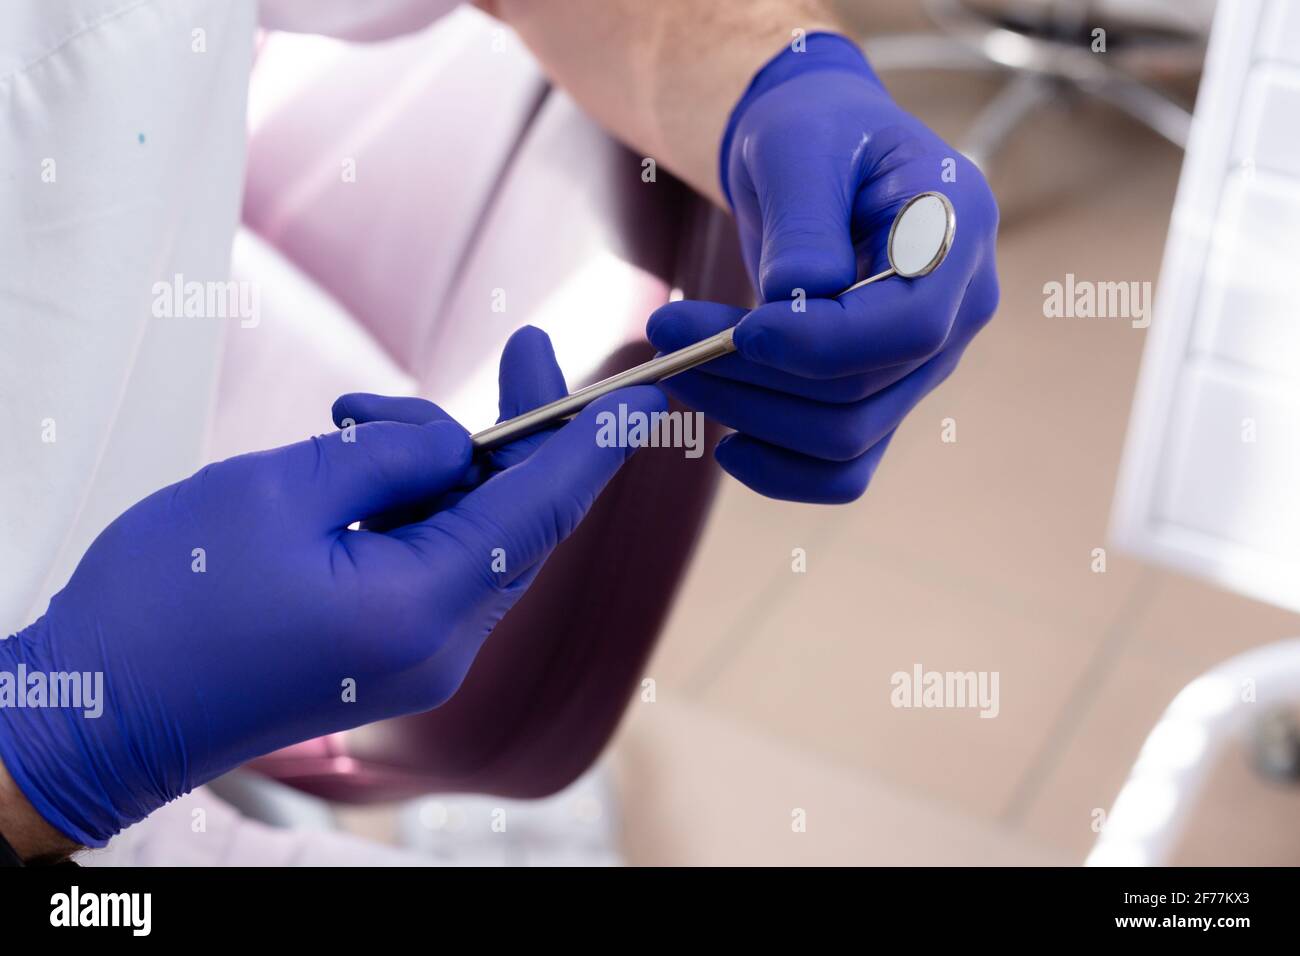 Specchio dentale in mani maschili con guanti medici blu Foto Stock